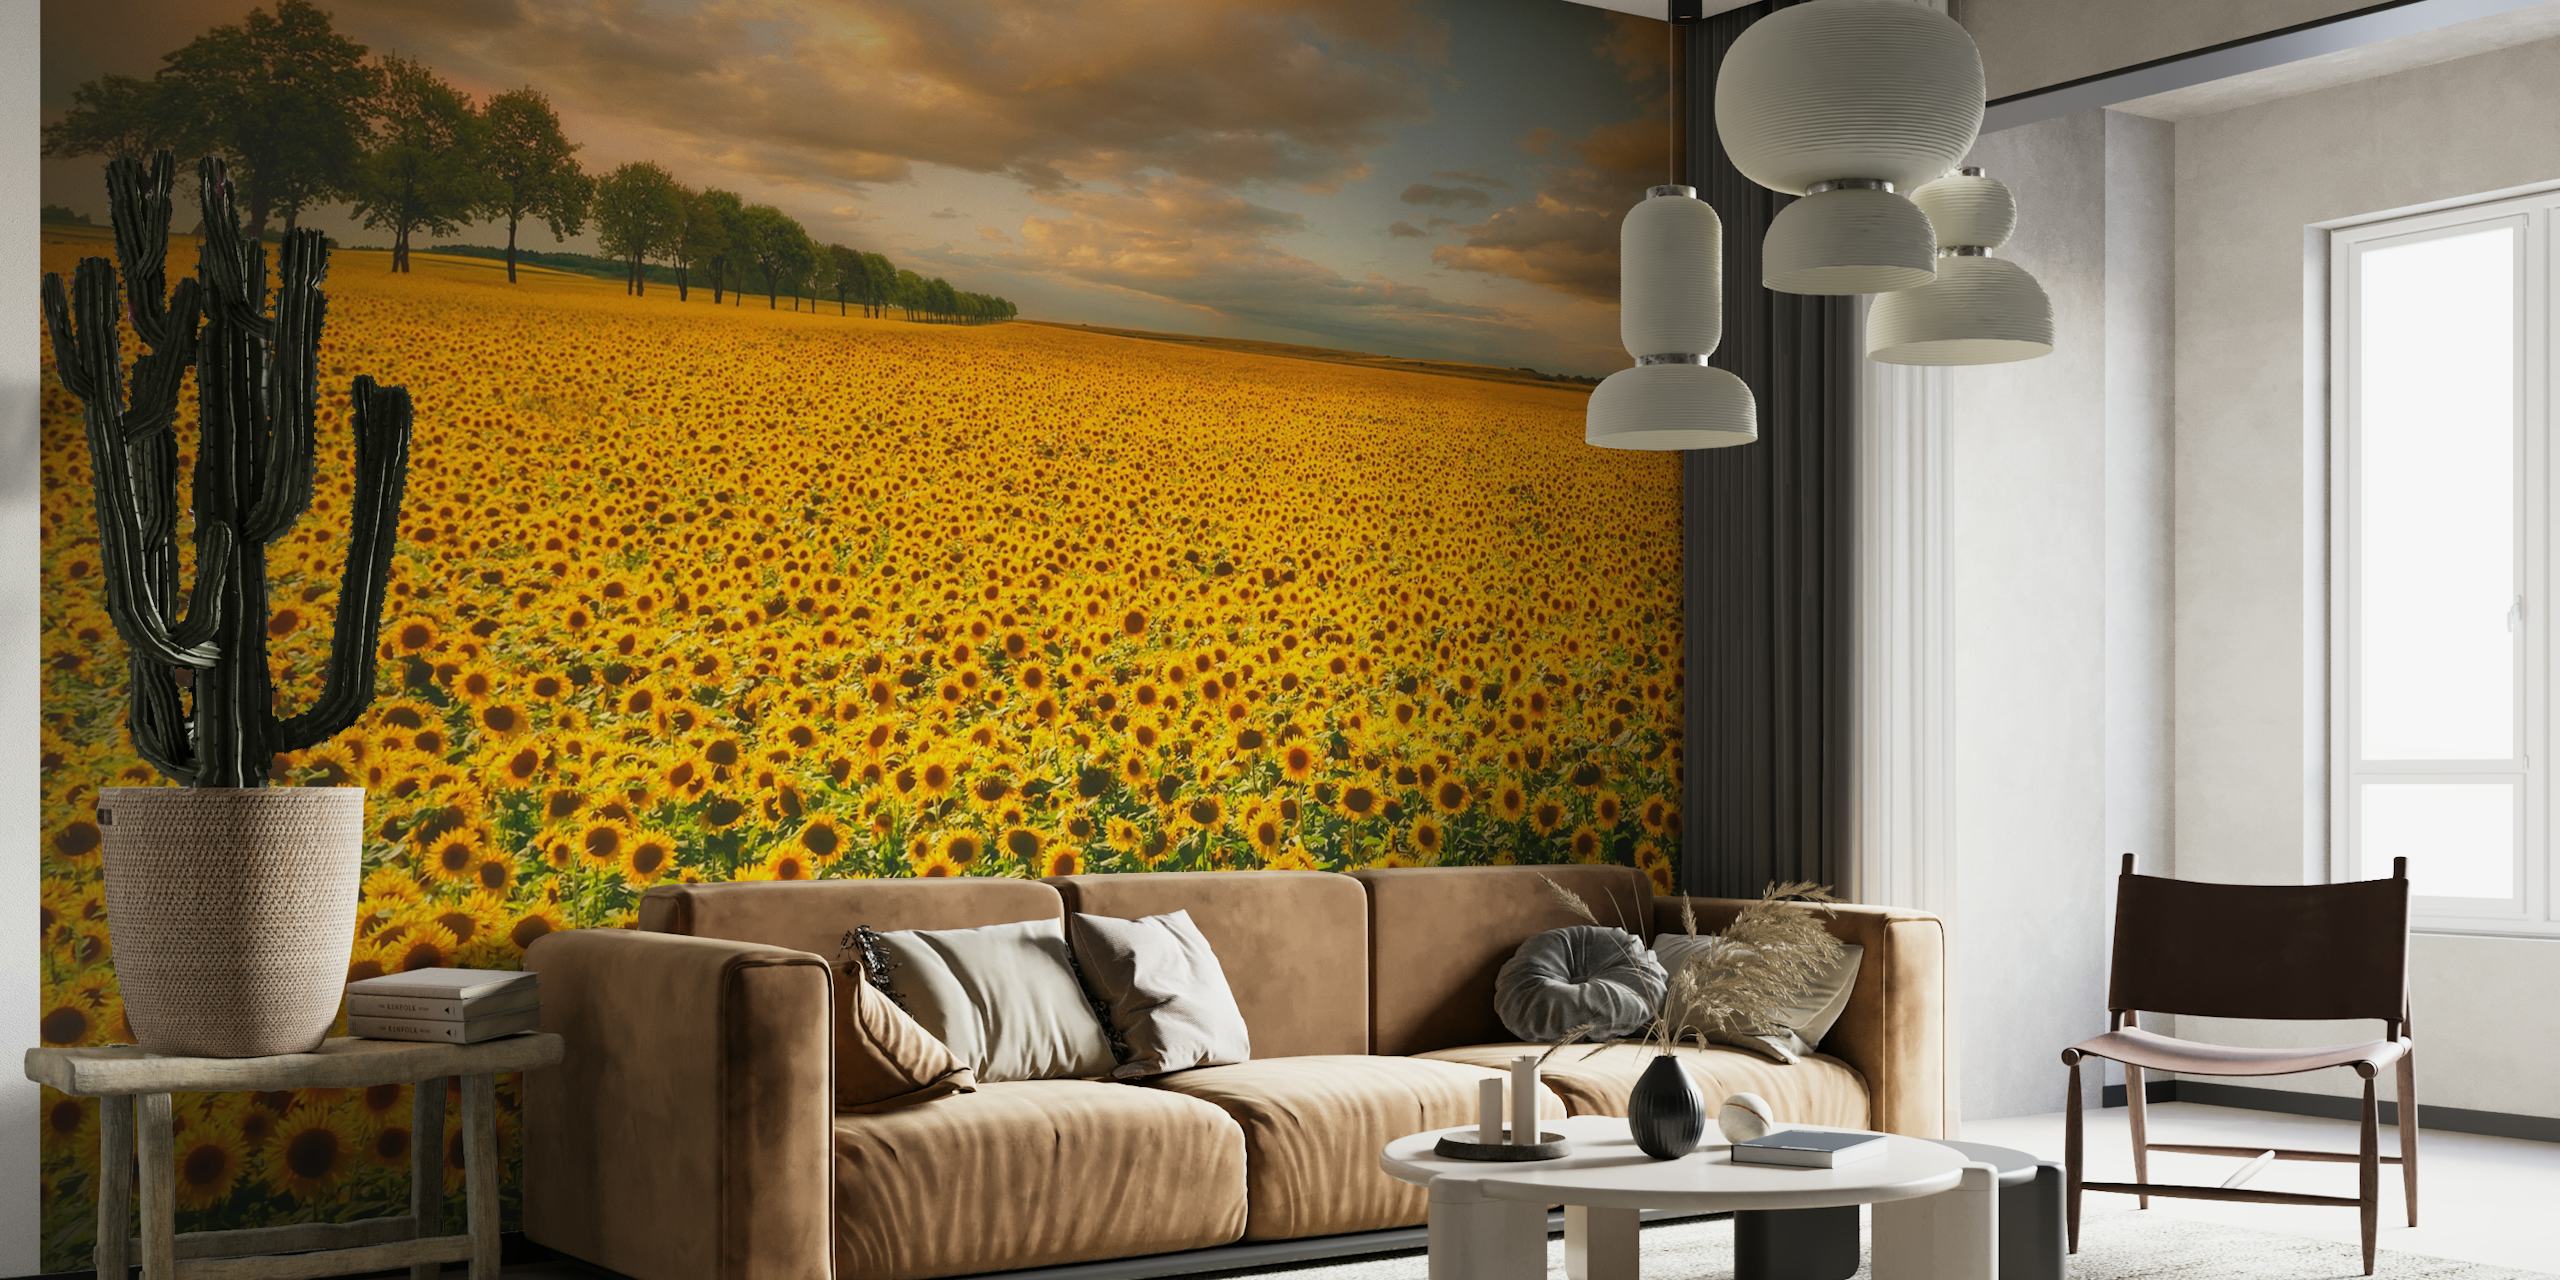 Živopisno polje suncokreta zidna slika s vedrim nebom